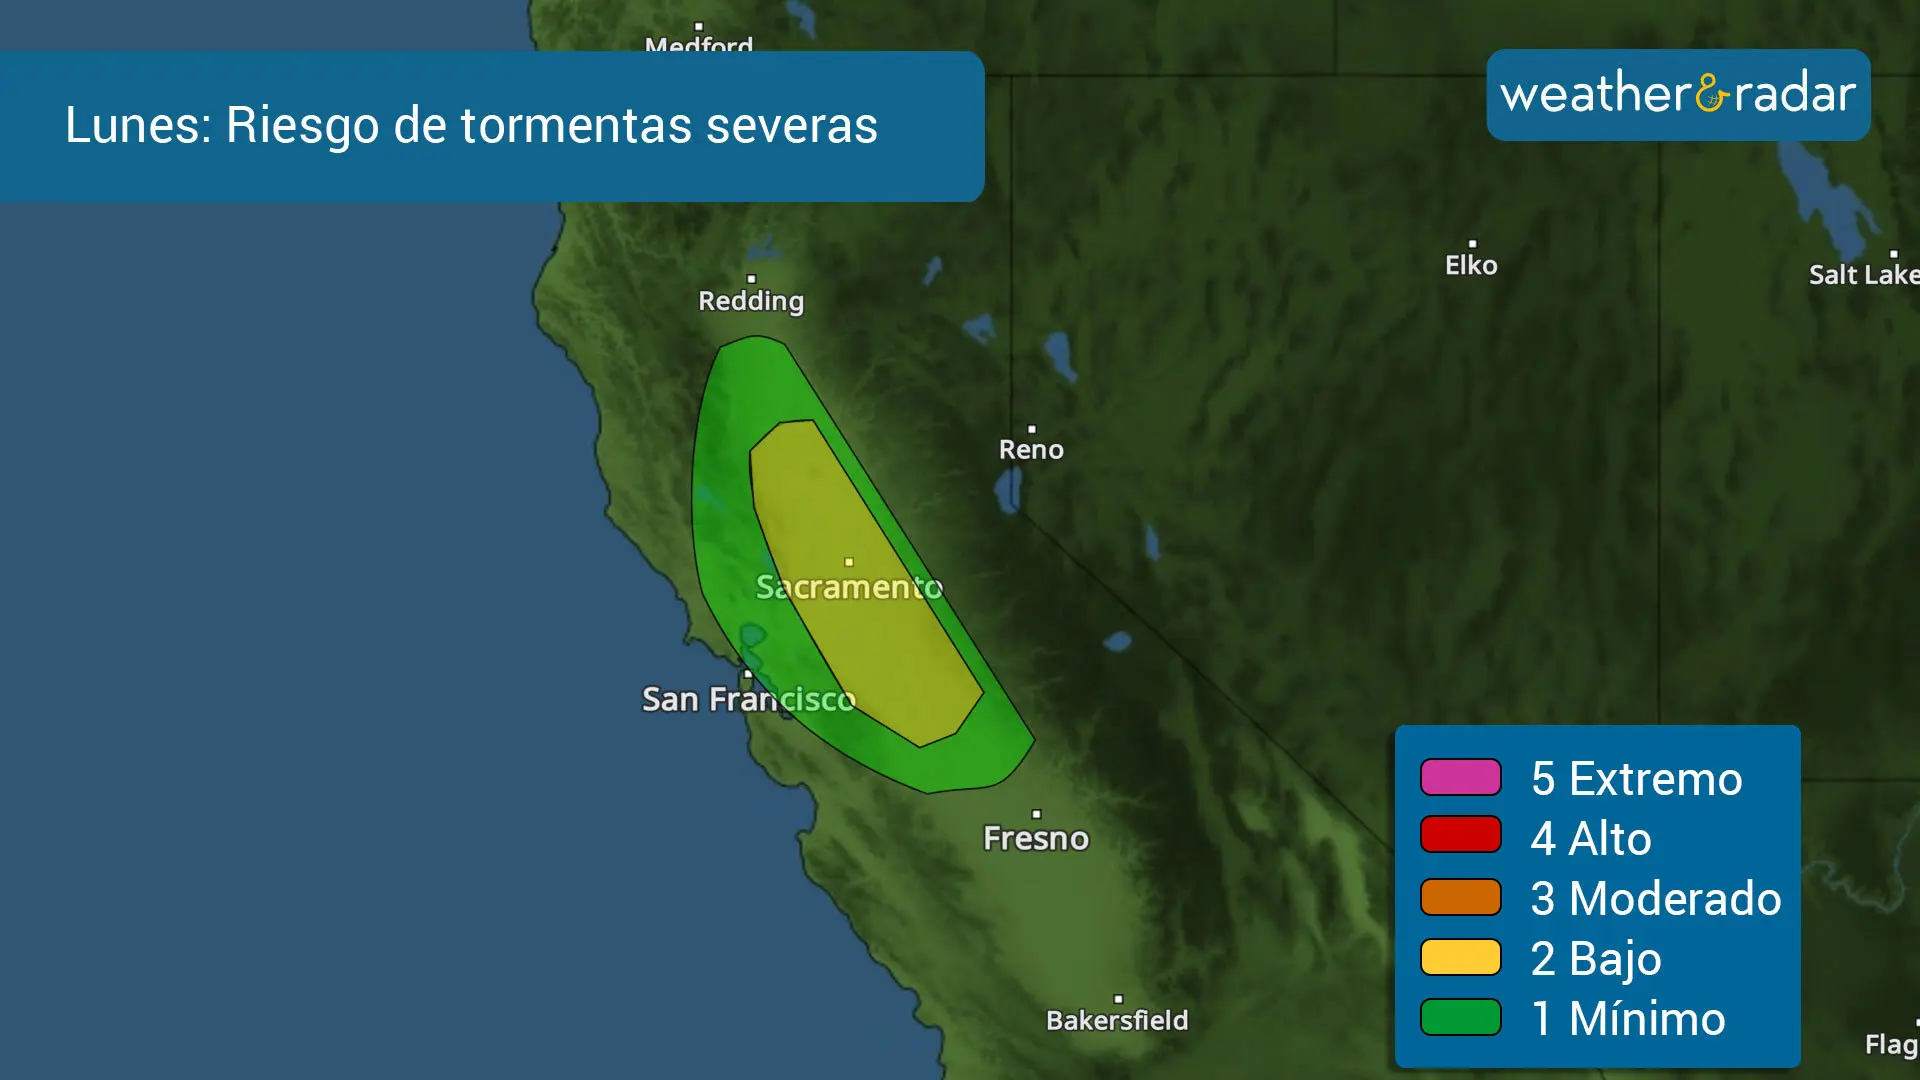 Riesgo de tormentas severas para el lunes, con la posibilidad de algun tornado es posible sobre le valle de Sacramento.